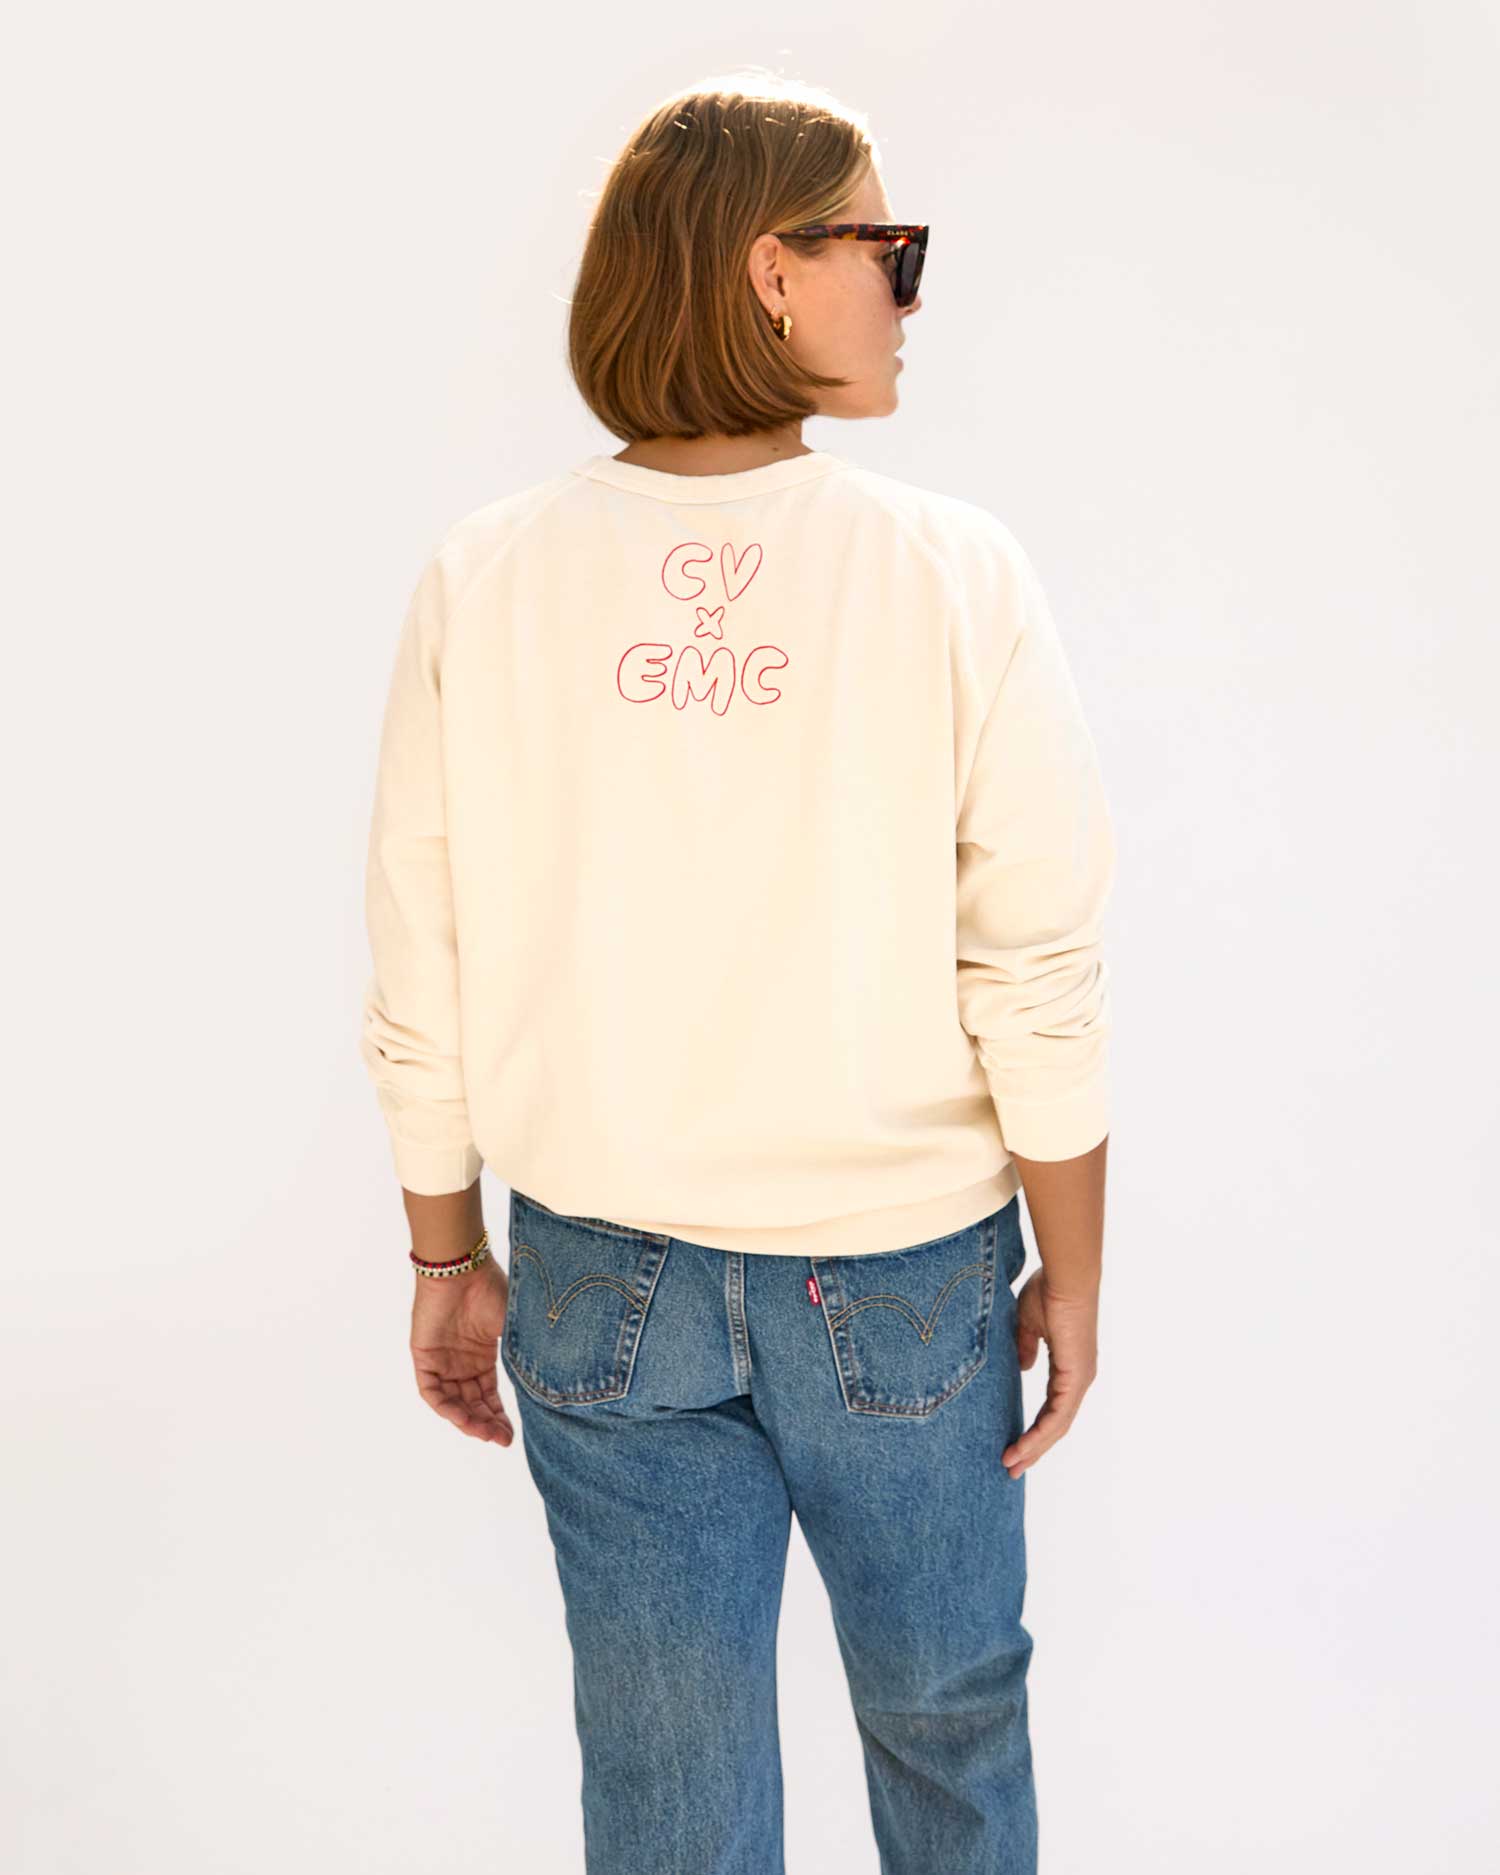 back view of Sonnie wearing the Cream w/ Liberté Ègalité Maternité Sweatshirt with jeans